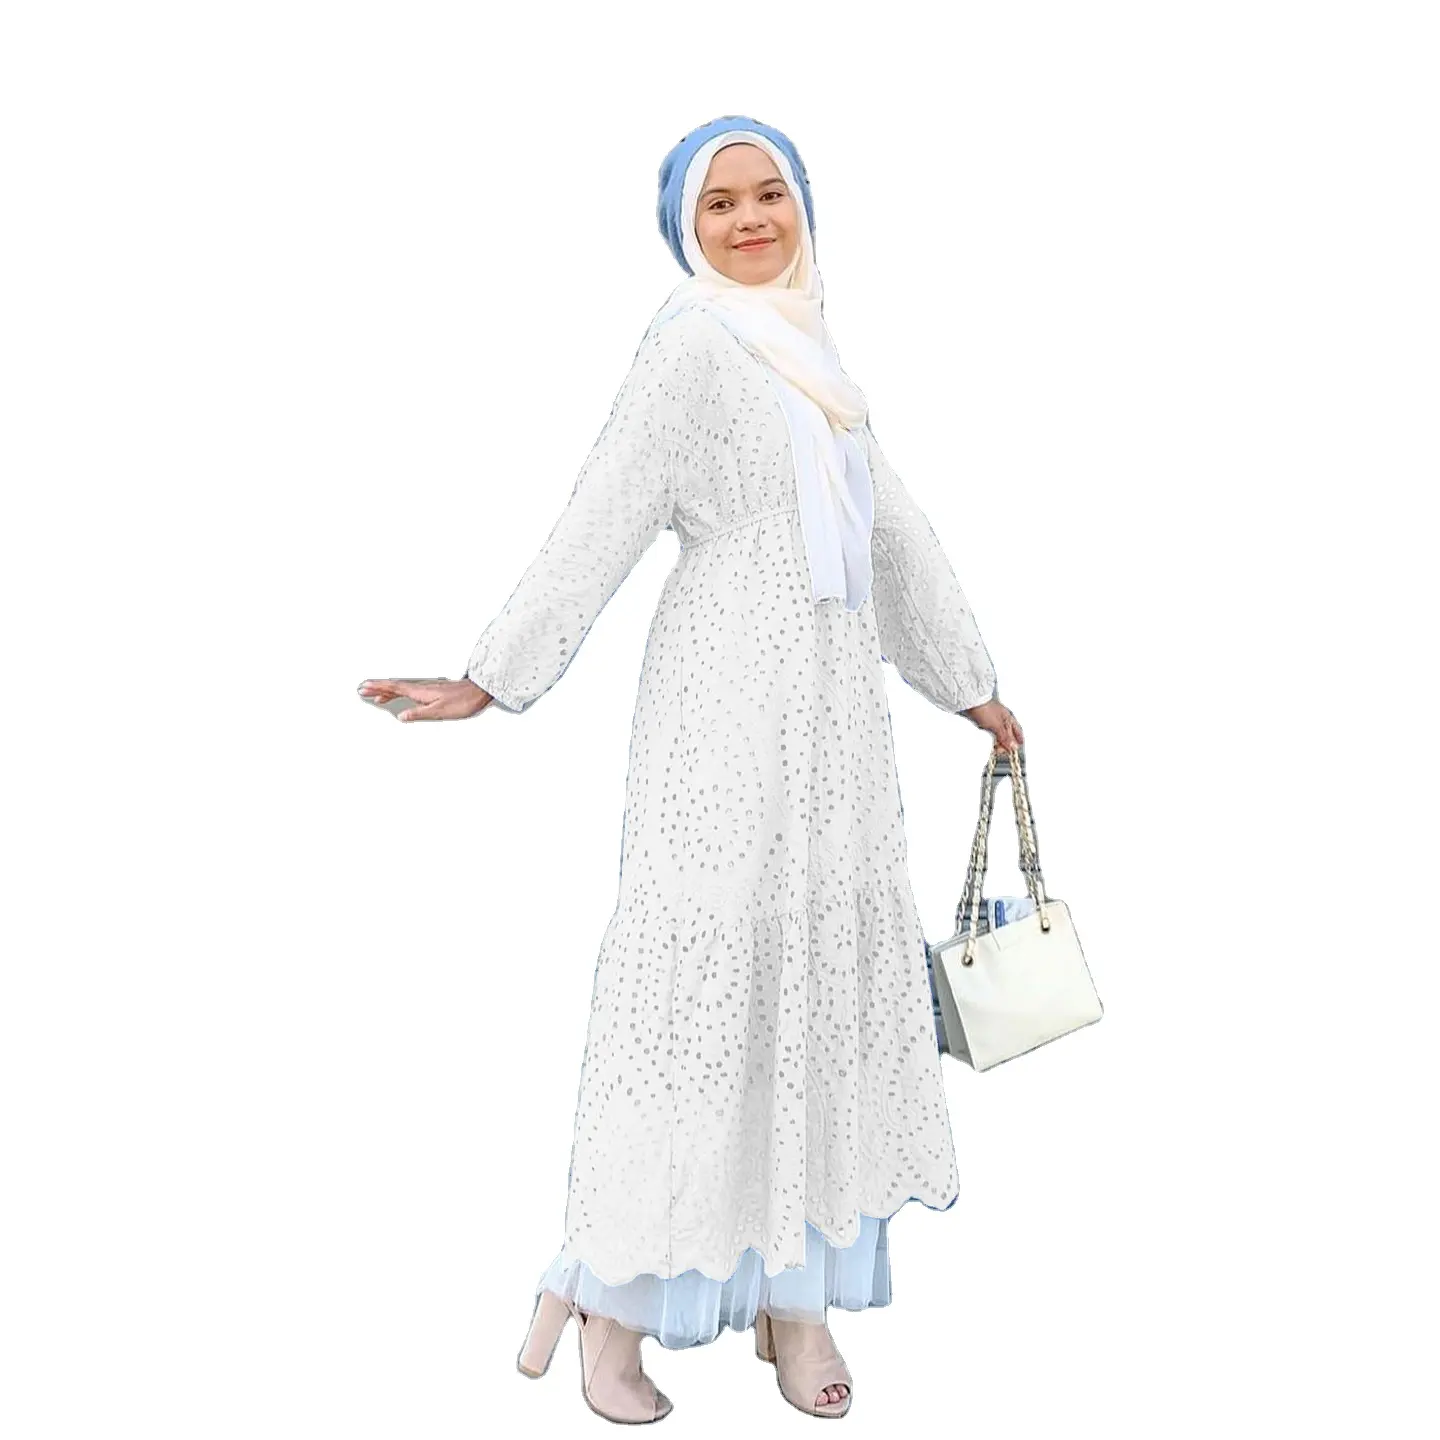 मुस्लिम महिलाओं के लिए दक्षिण पूर्व एशियाई खोखली फीता पोशाक प्लस आकार महिलाओं की पोशाक प्लस आकार महिलाओं की पोशाक